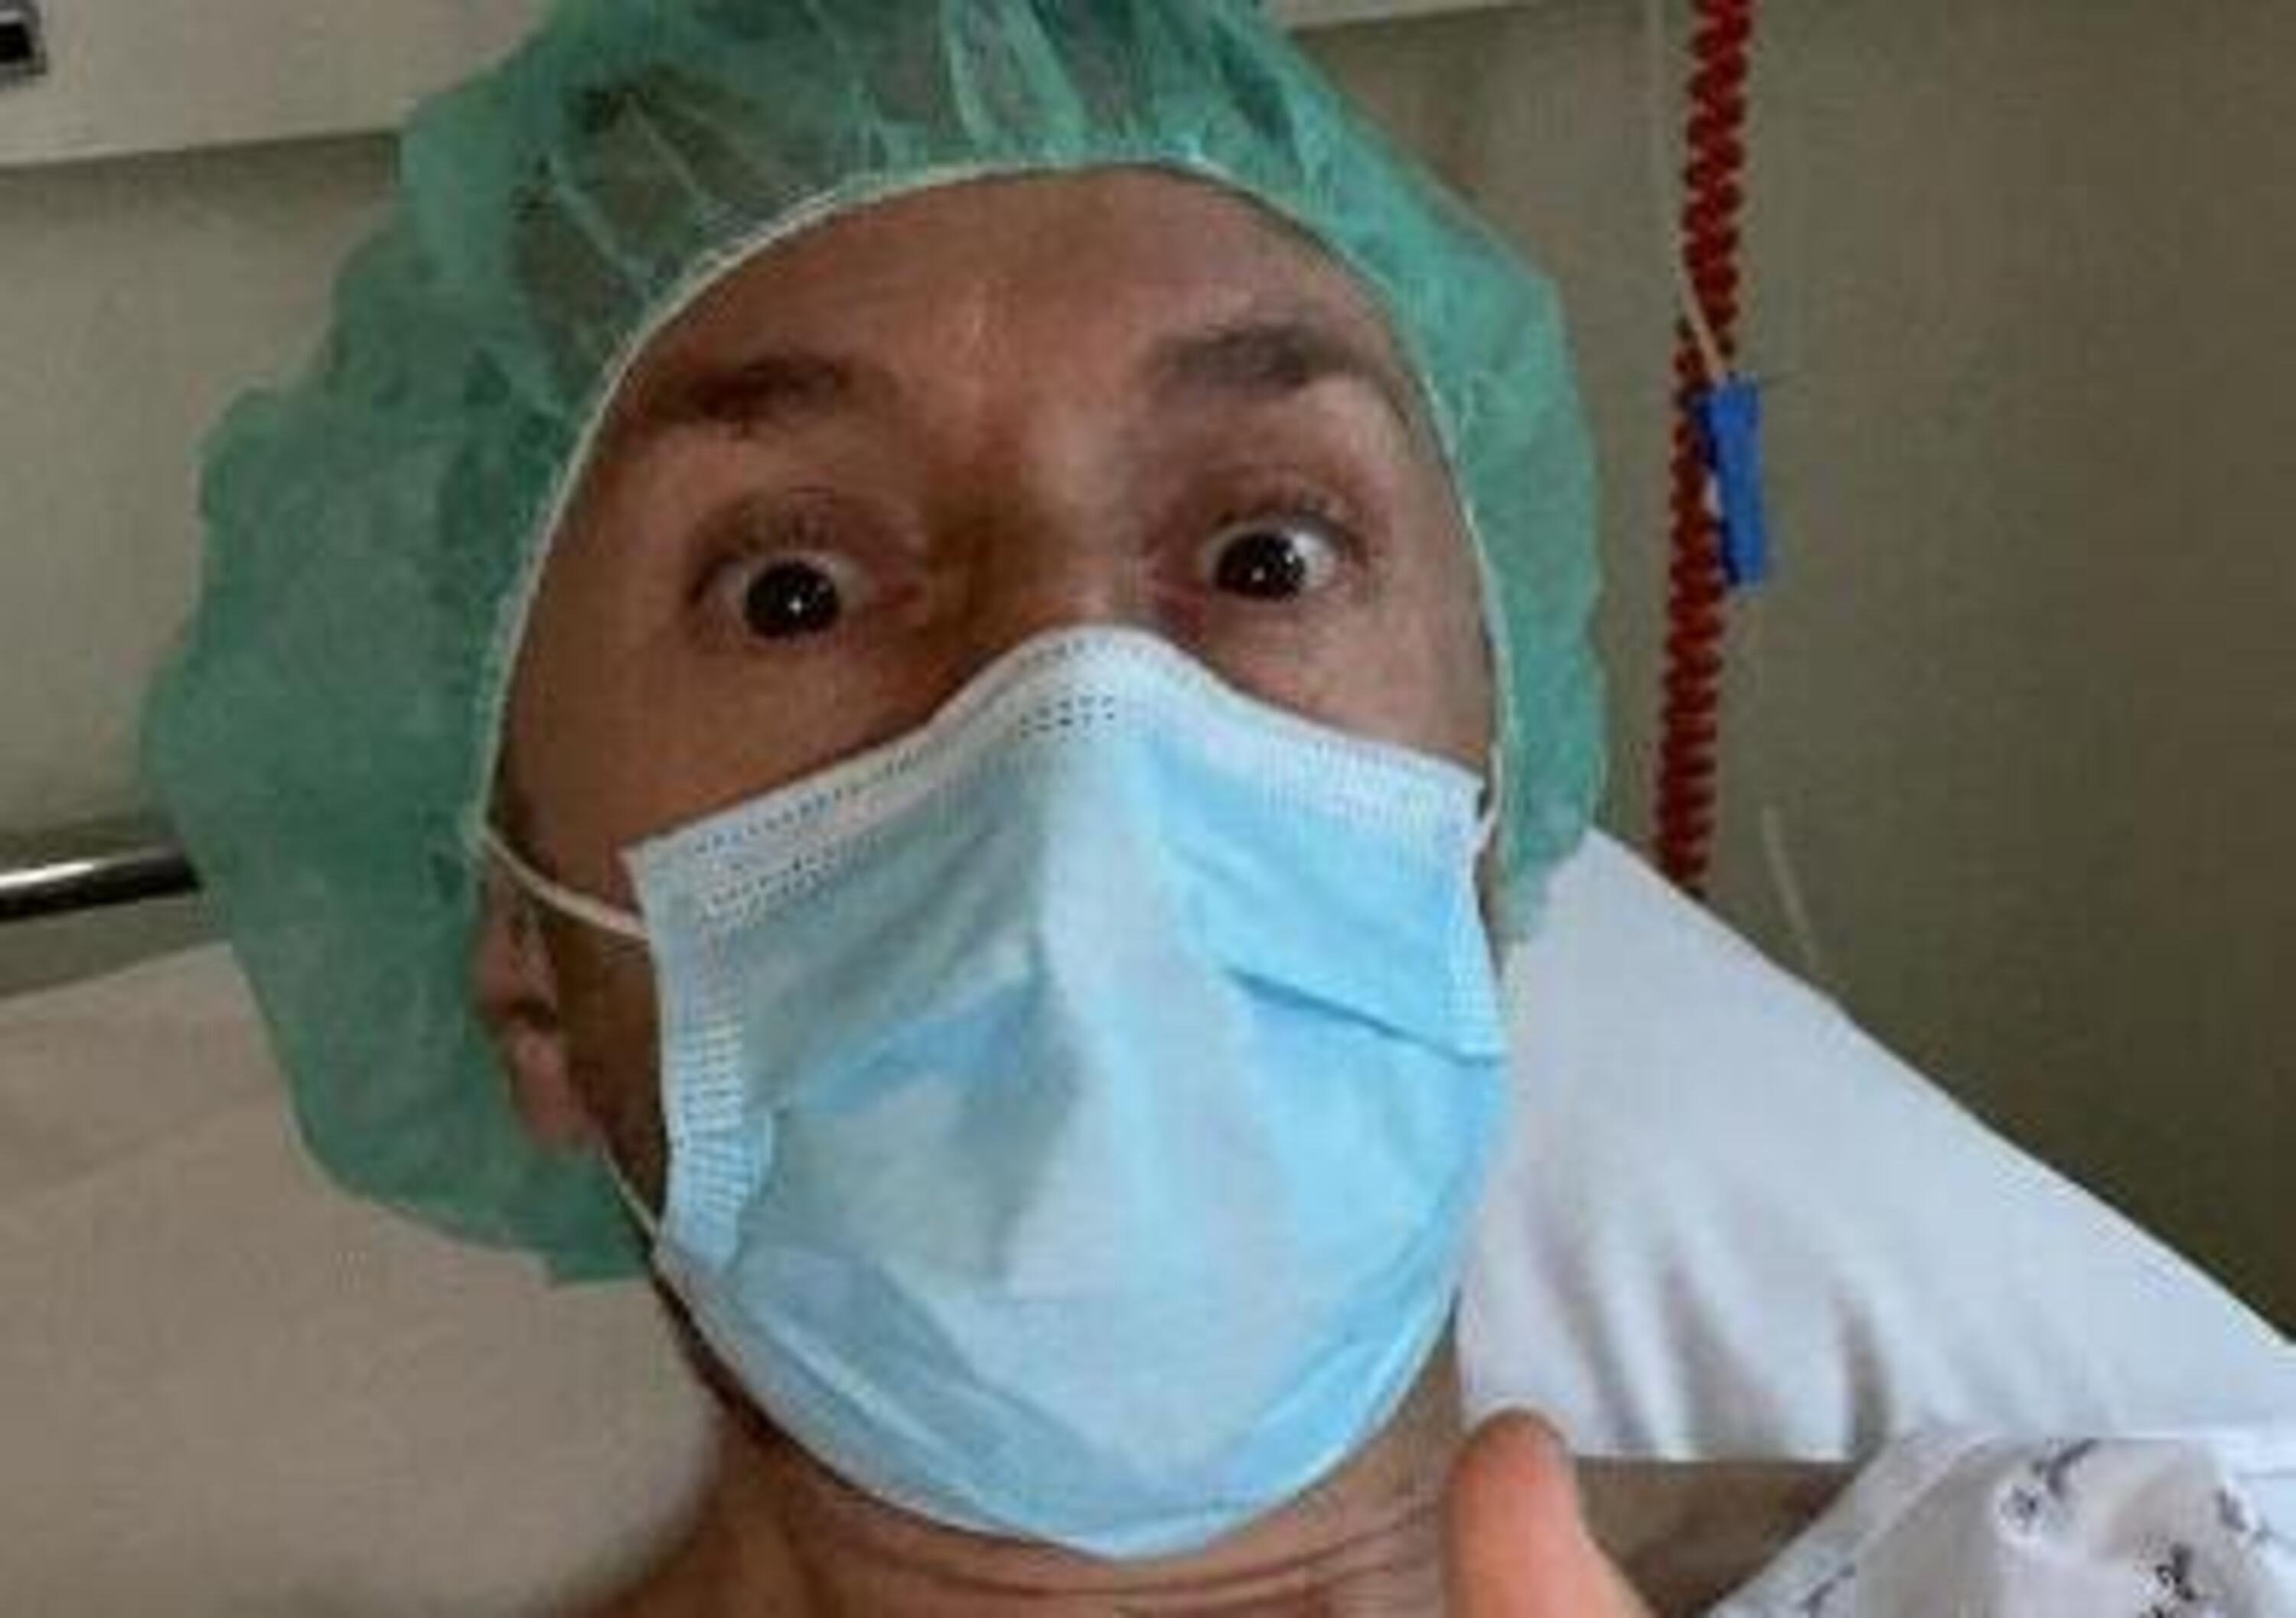 Tony Cairoli va a fare il &quot;tagliando&quot;: intervento chirurgico al ginocchio